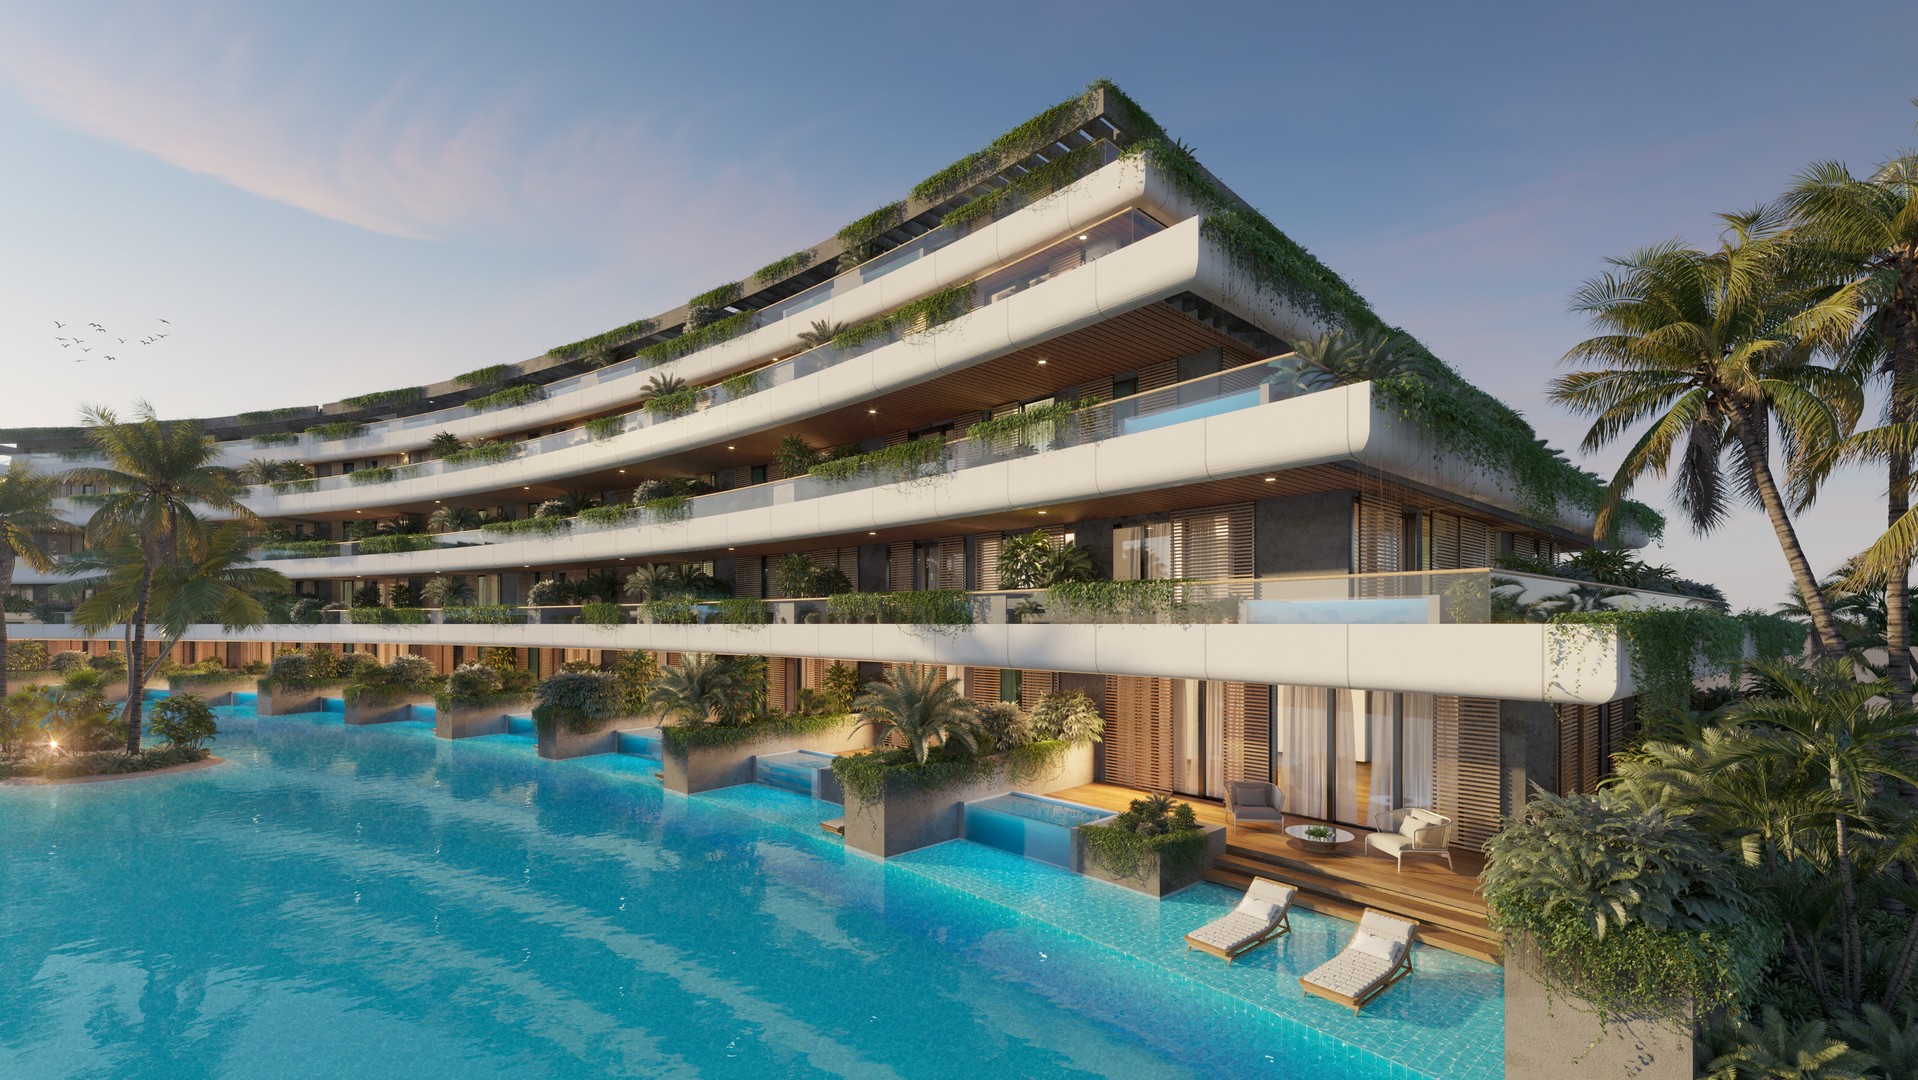 apartamentos - Apartamentos de lujo de venta en Punta Cana, a 3 minutos de la playa. 1,2,3 hab. 1